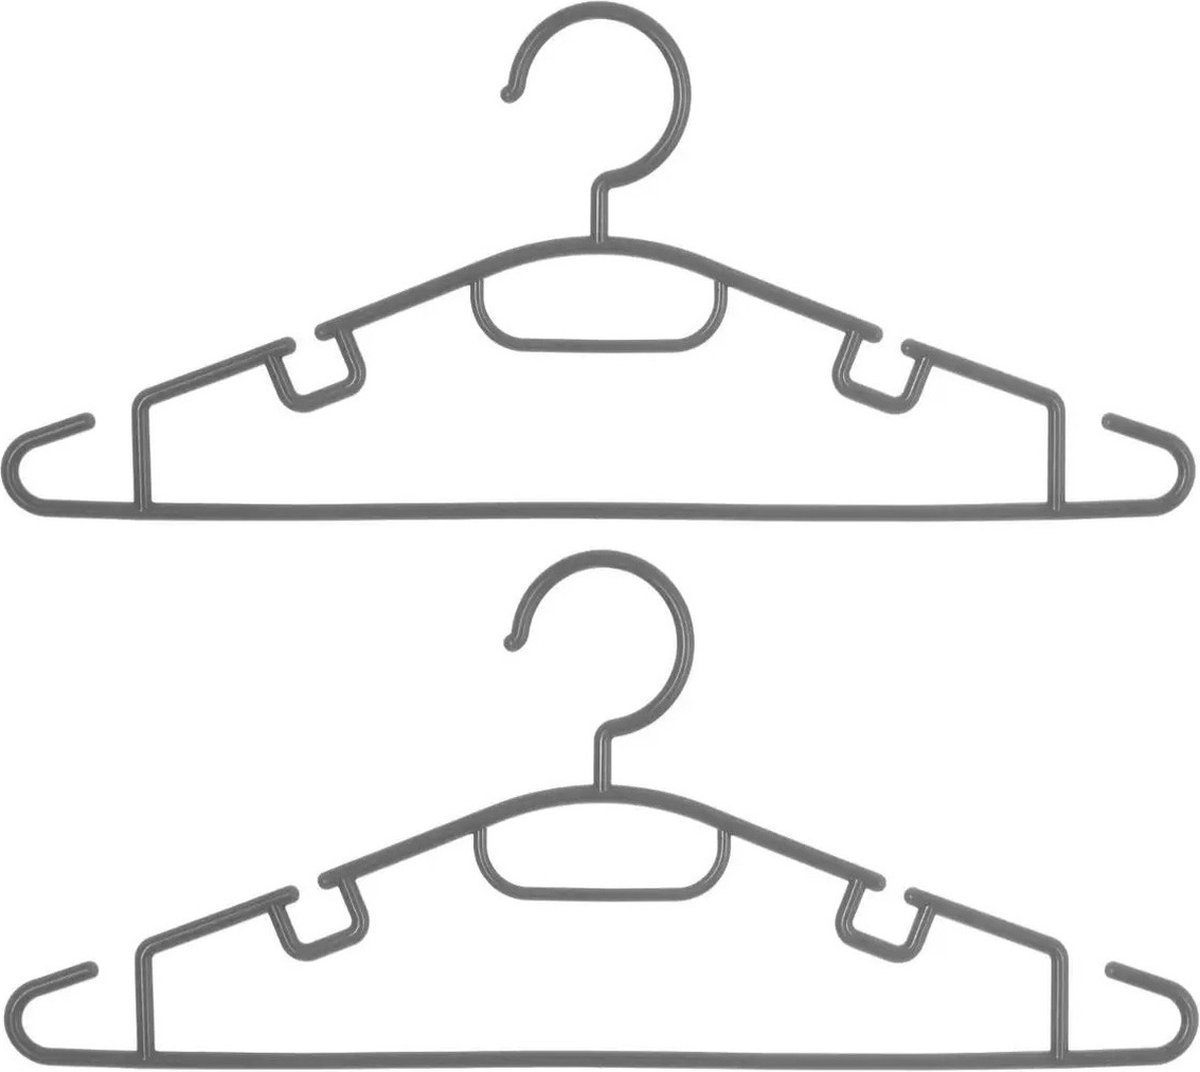 Set van 30x stuks kunststof kledinghangers grijs 40 x 18 cm - Kledingkast hangers/kleerhangers